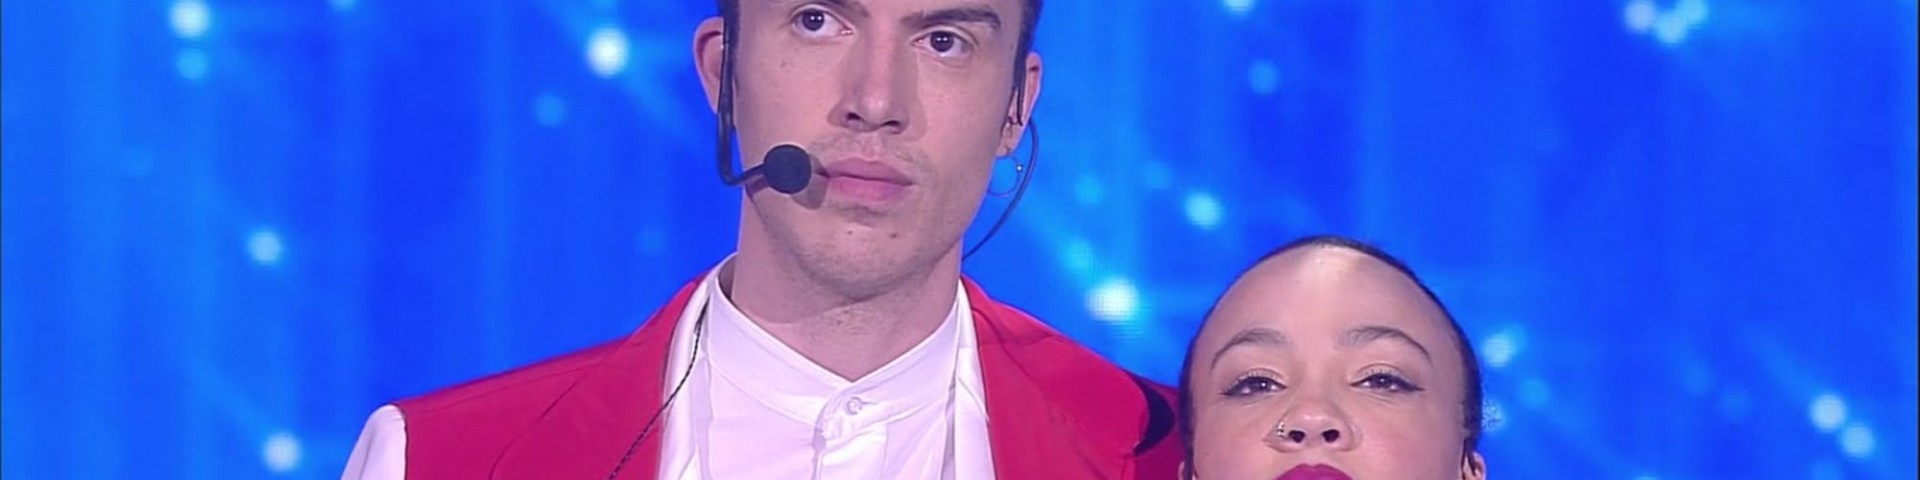 Mameli contro Valentina: chi ha vinto il televoto speciale?